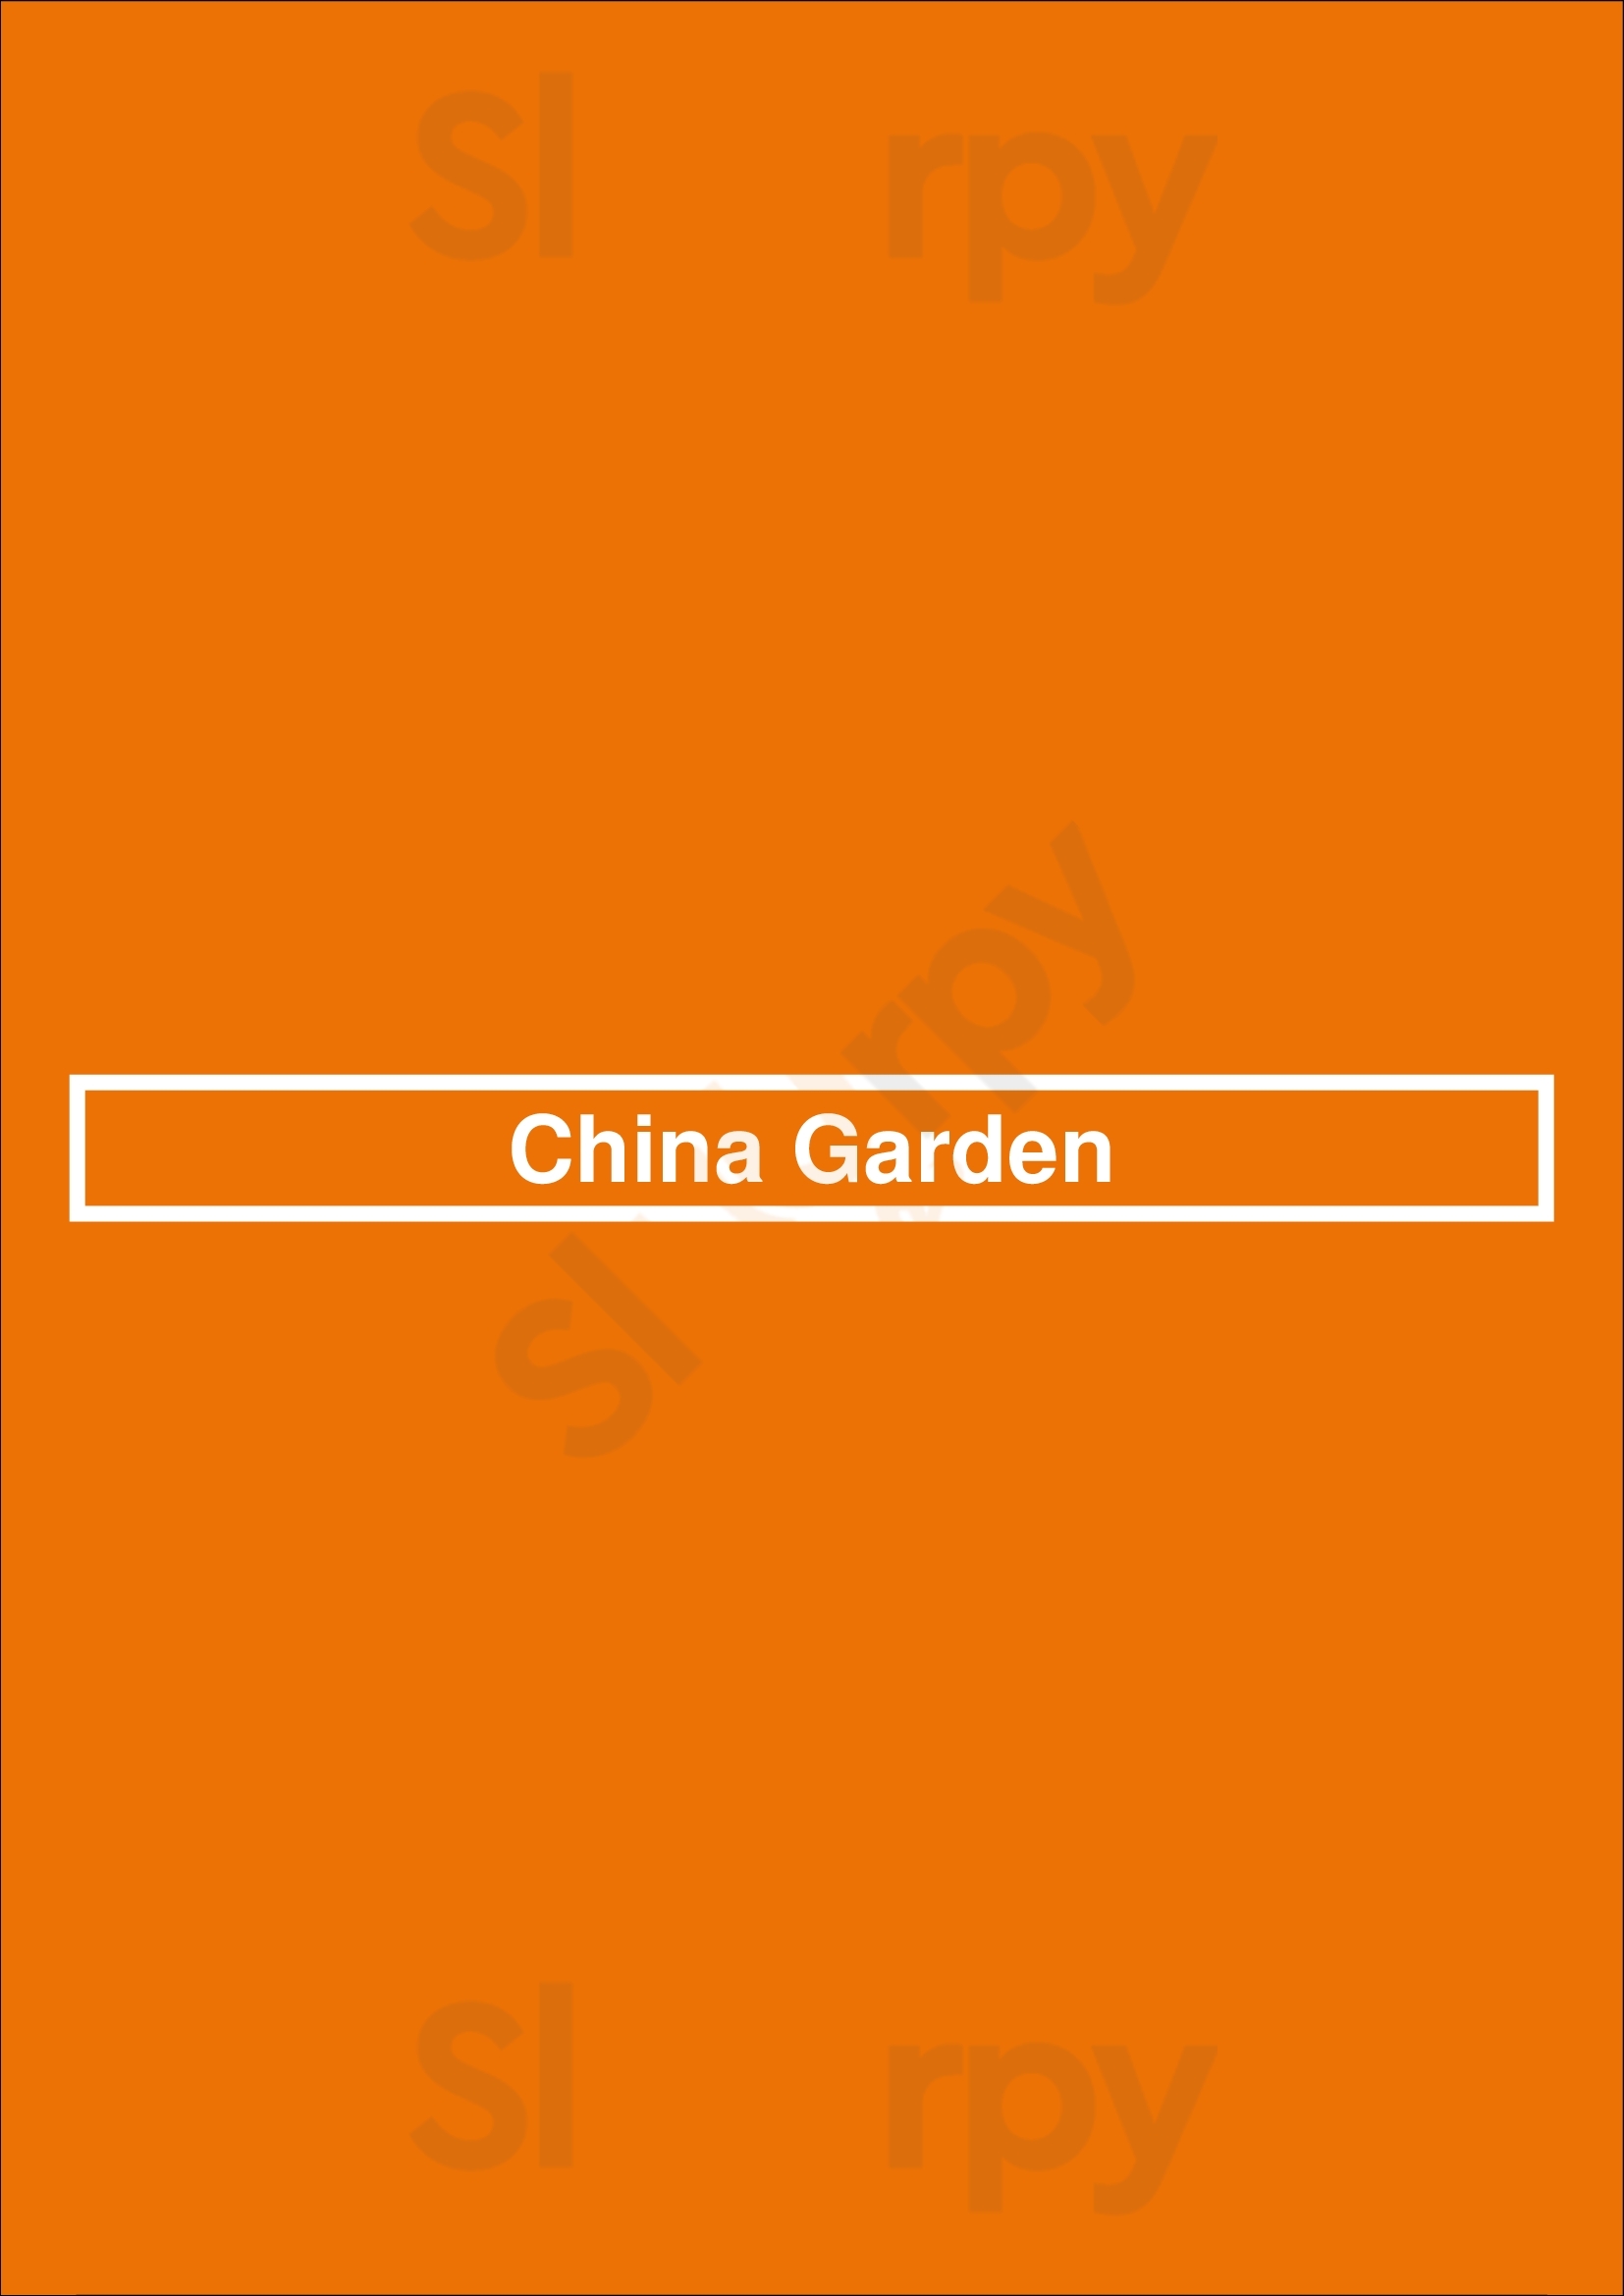 China Garden London Menu - 1